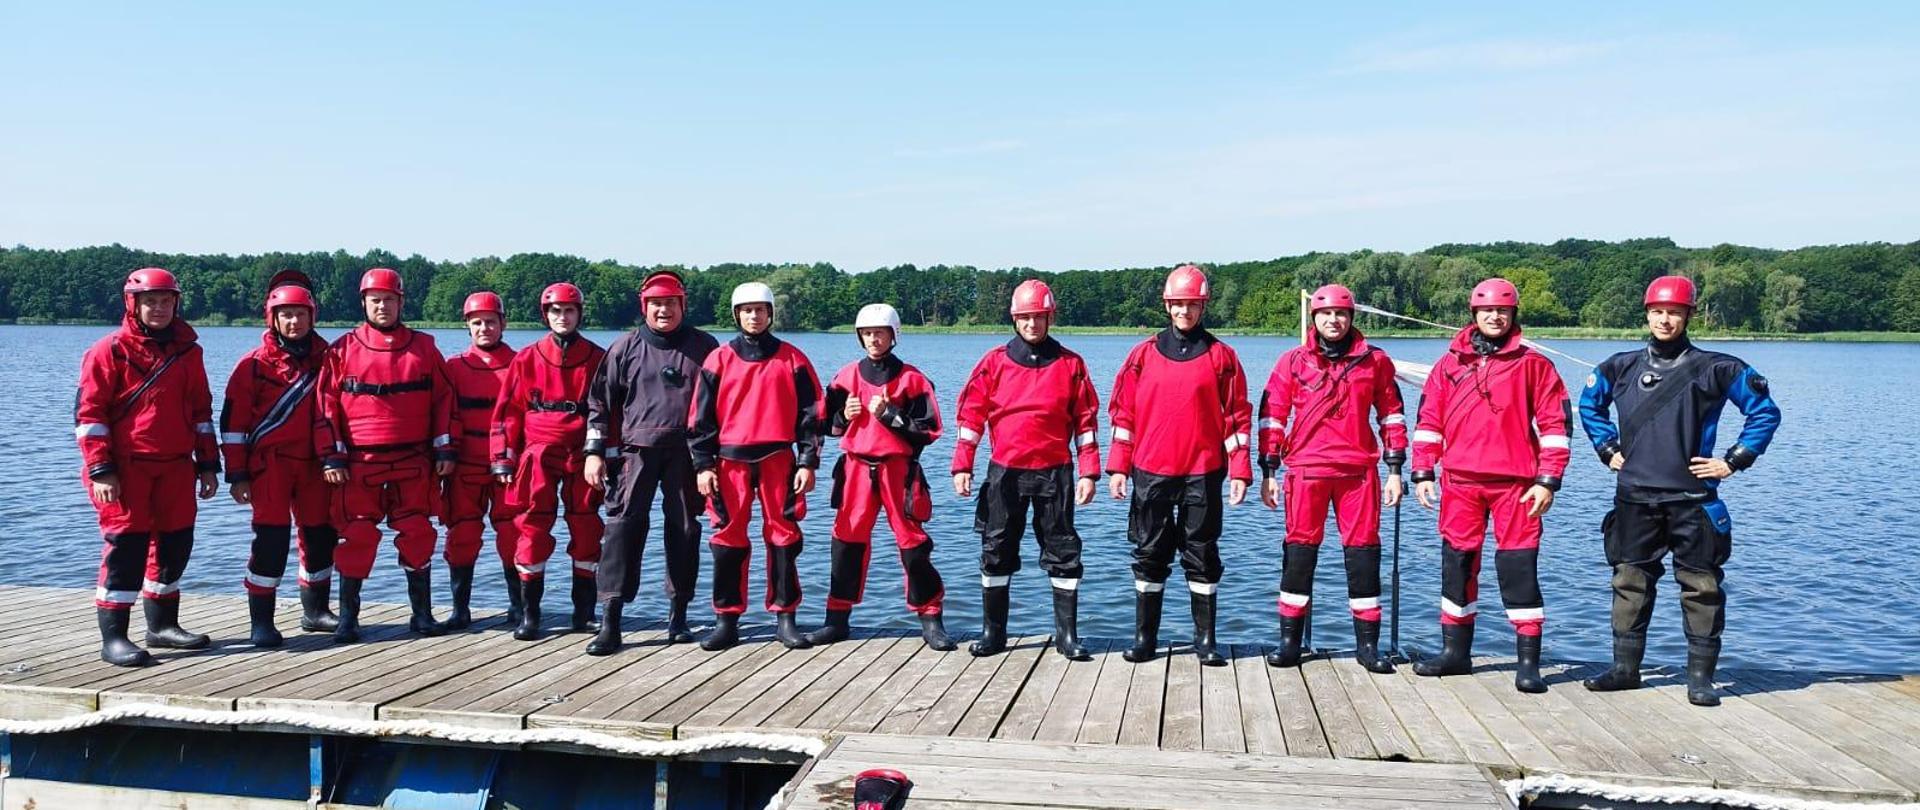 Szkolenie z ratownictwa na obszarach wodnych realizowanego przez ksrg w zakresie podstawowym. Na zdjęciu strażacy podczas szkolenia na jeziorze, strażacy stoją do zdjęcia pamiątkowego, ubrani w skafandry nurkowe.